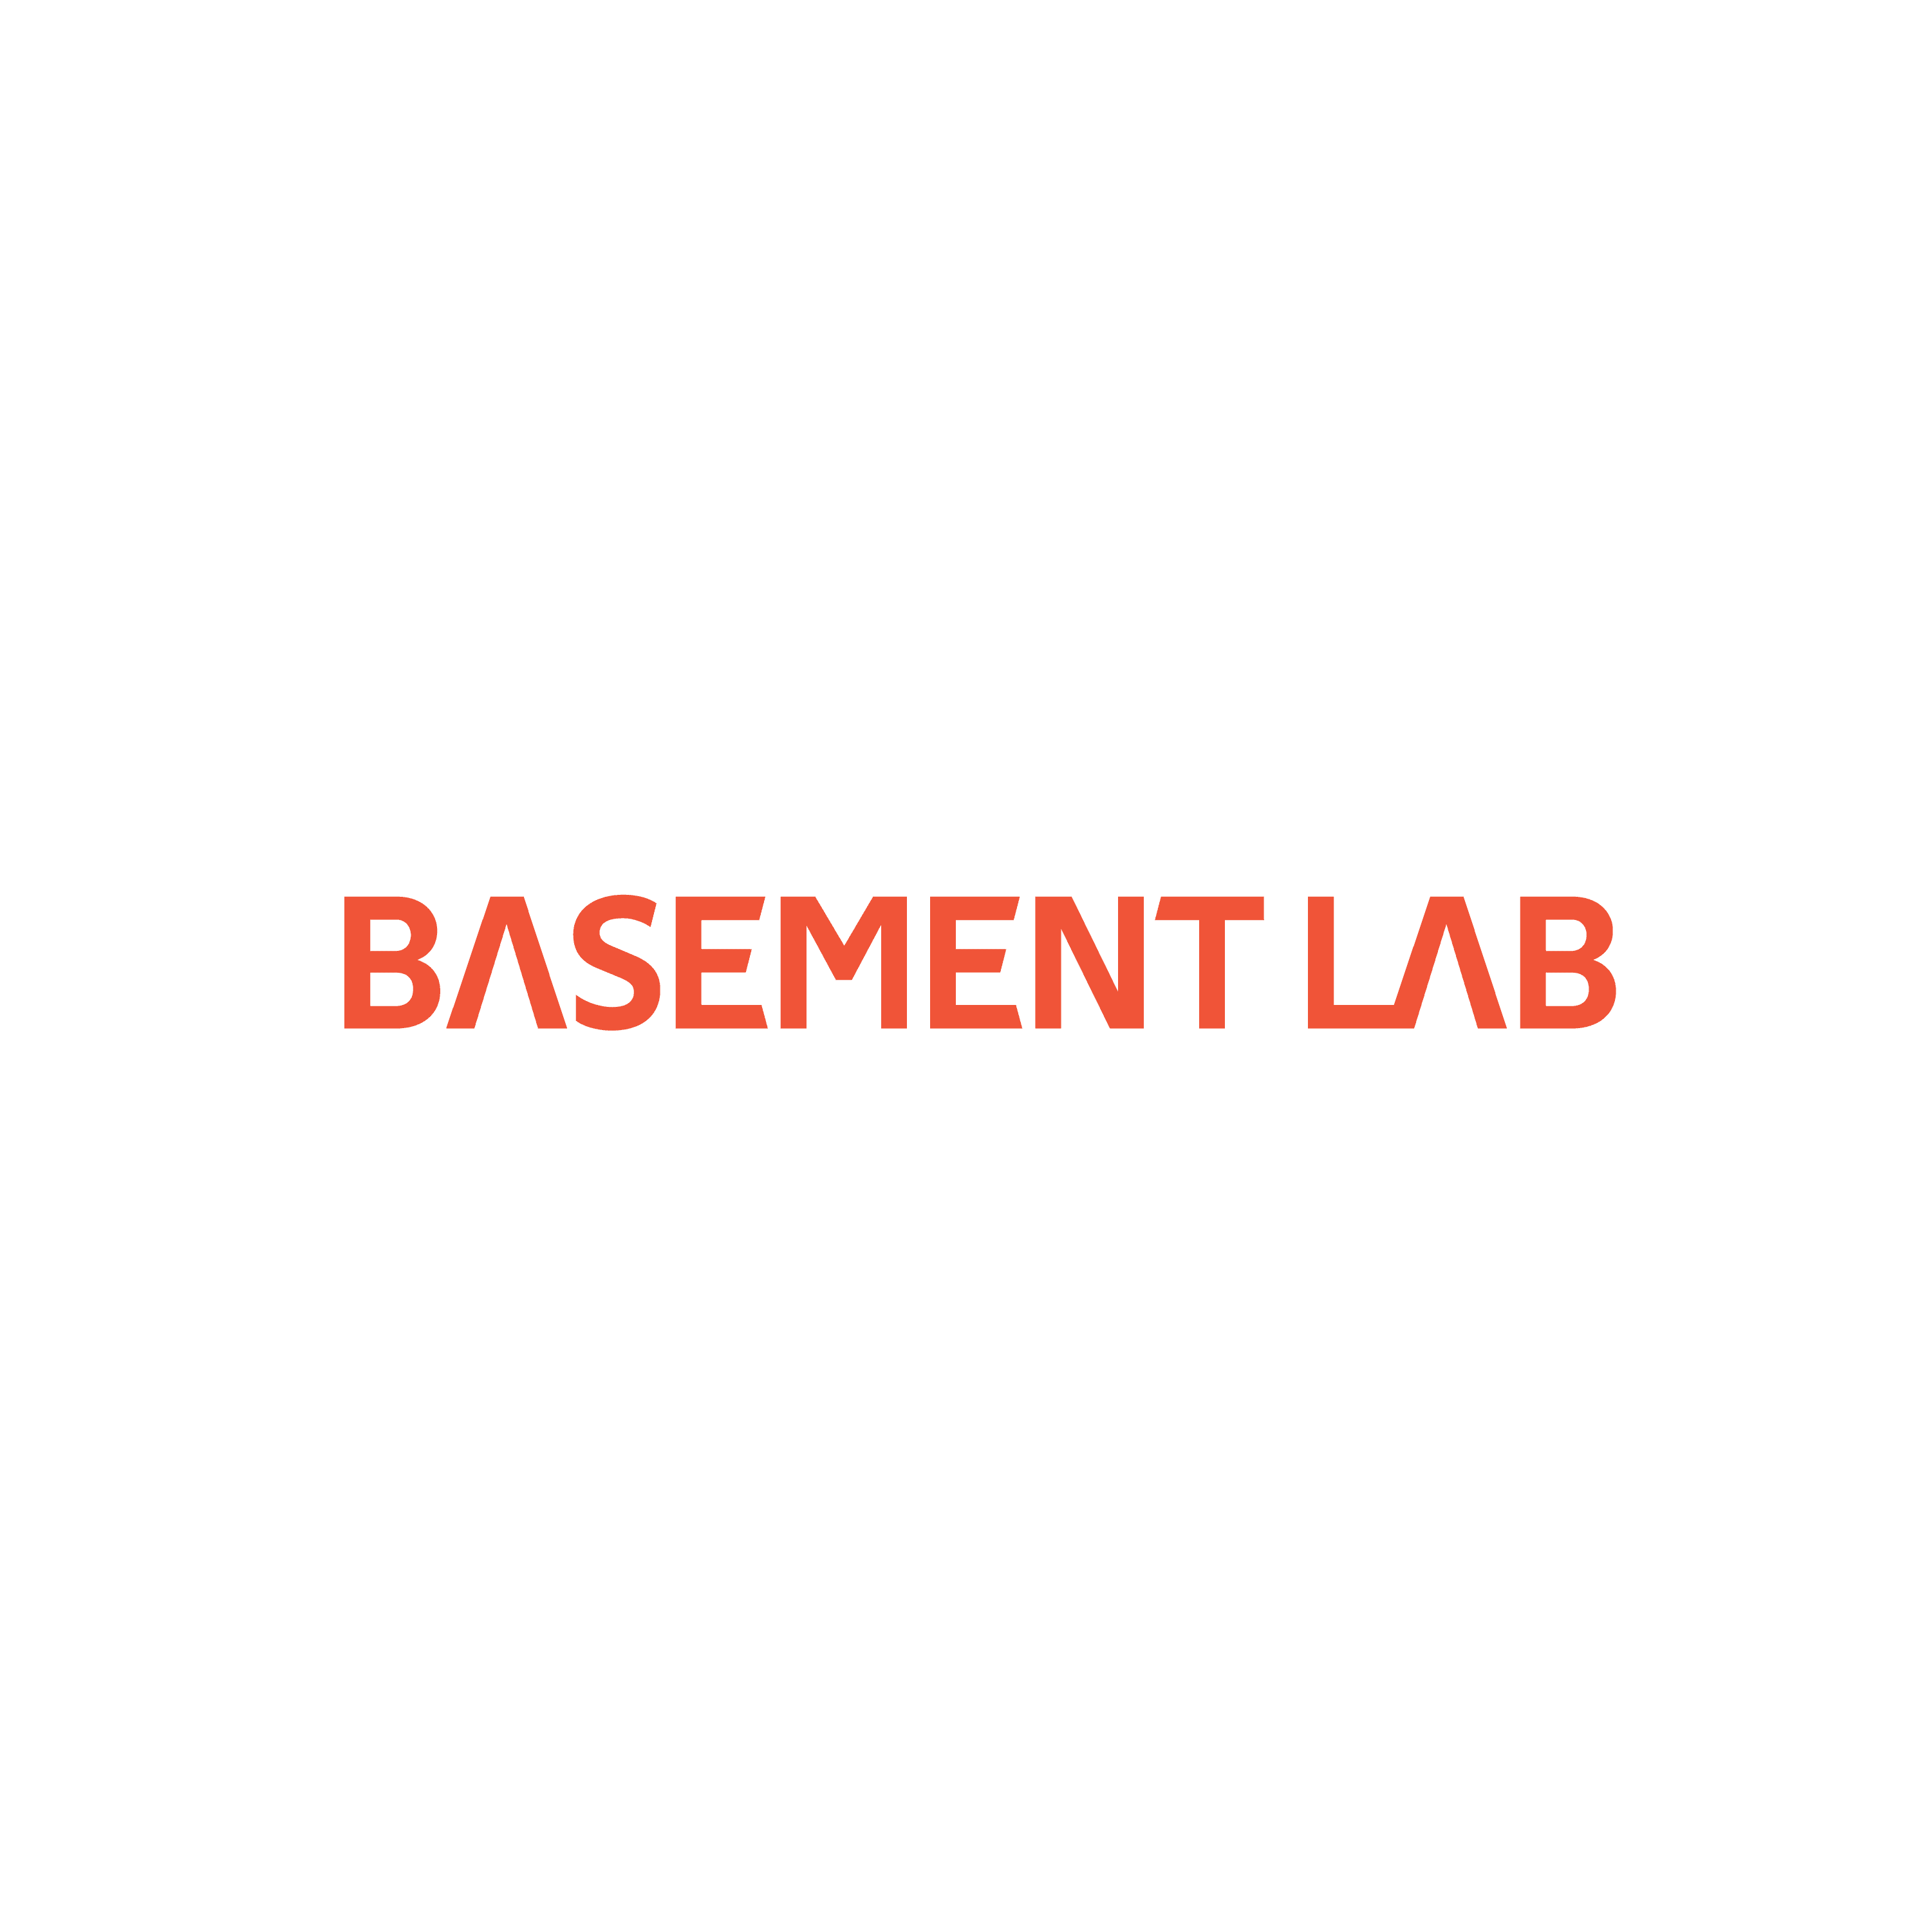 BasementLab